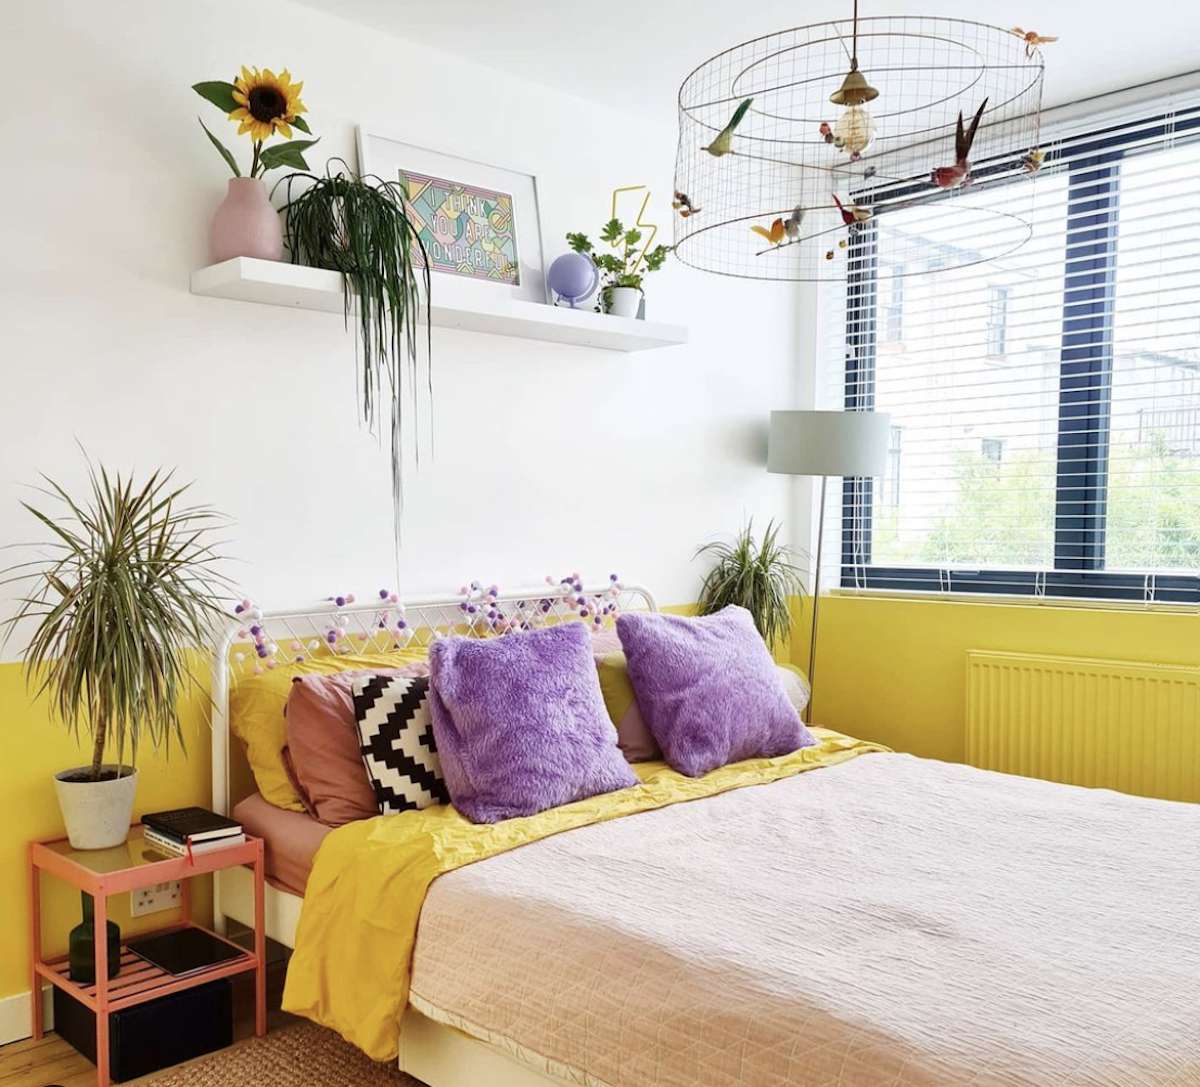 dormitorio morado y amarillo con paredes blancas, estantería flotante con plantas y obras de arte, lámpara de araña que parece una jaula de pájaros